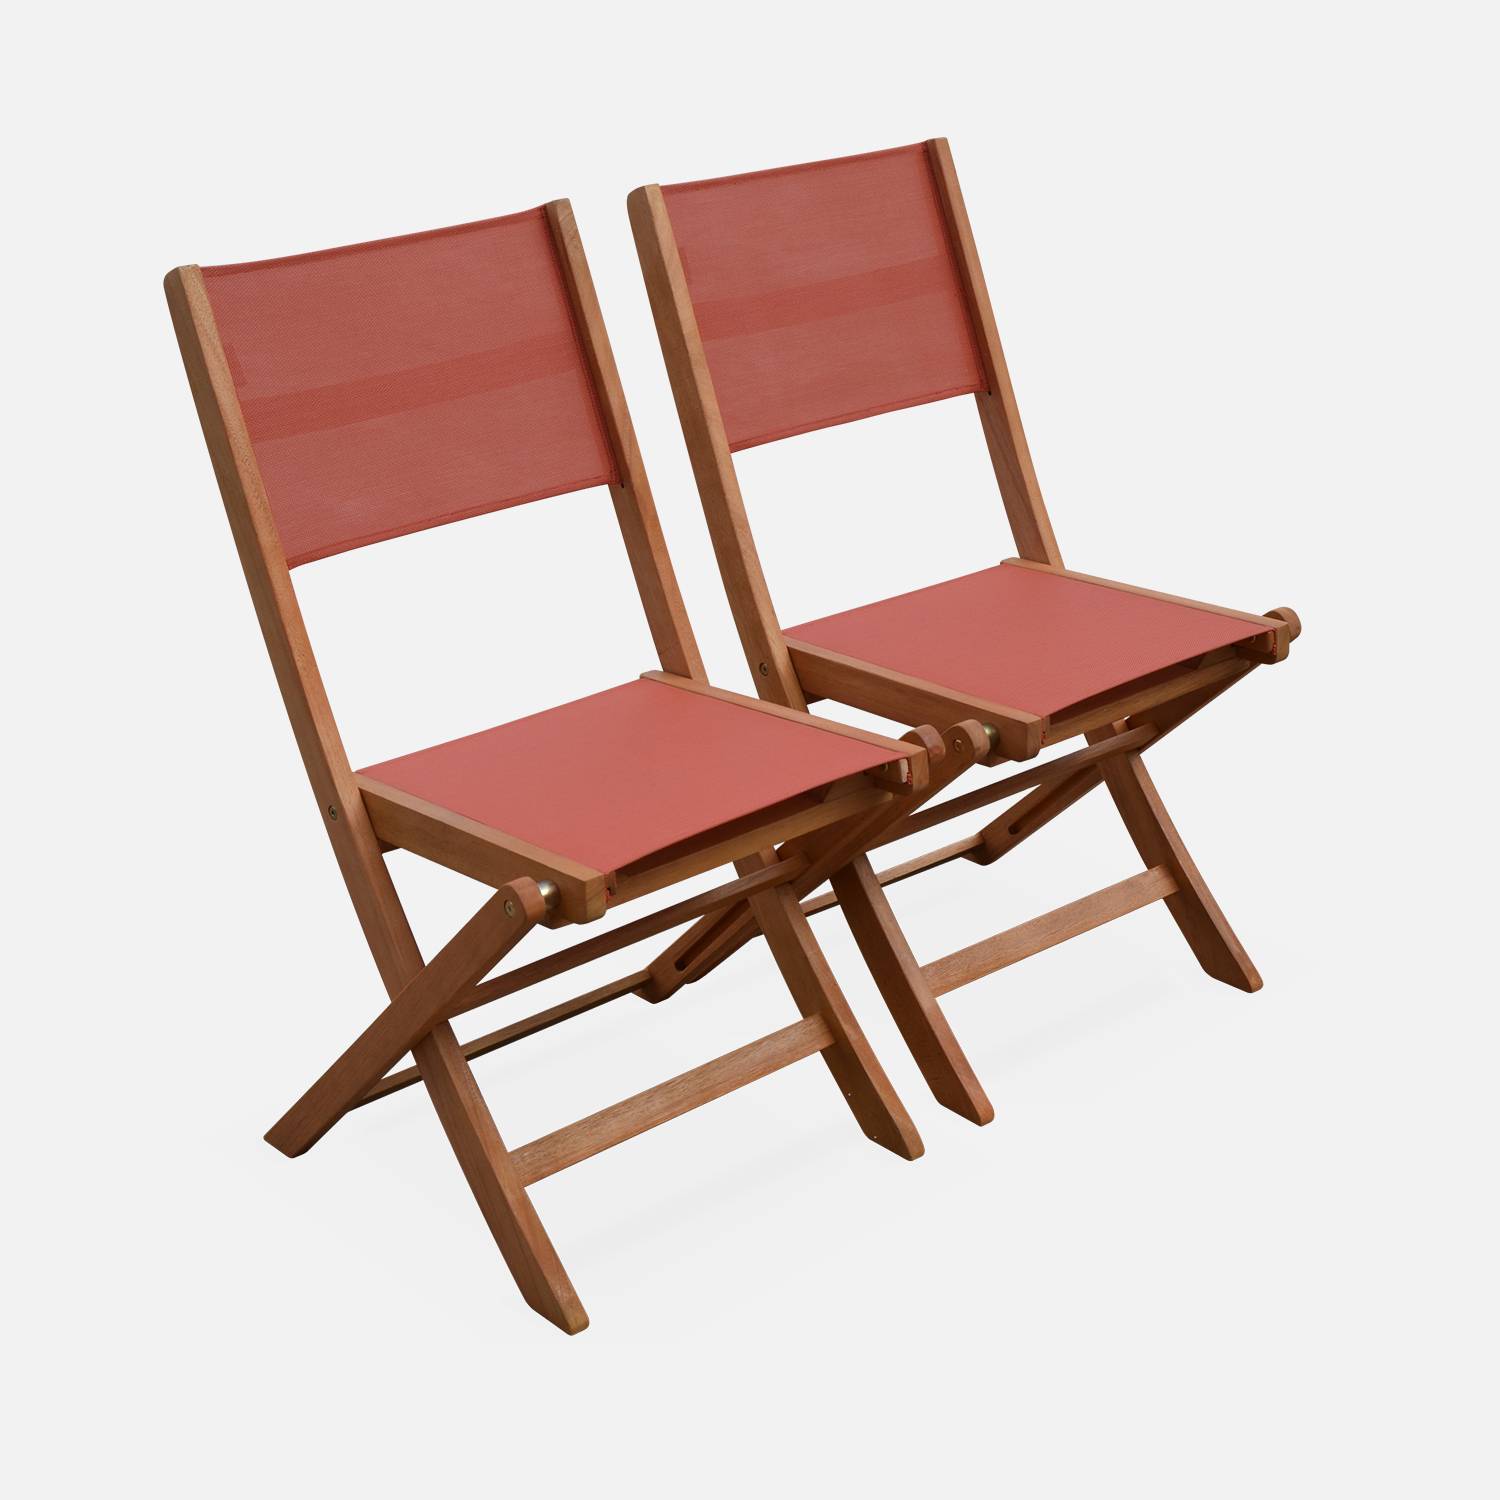 Gartenstühle aus Holz und Textilene - Almeria terrakotta - 2 Klappstühle aus geöltem FSC Eukalyptusholz und Textilene Photo3